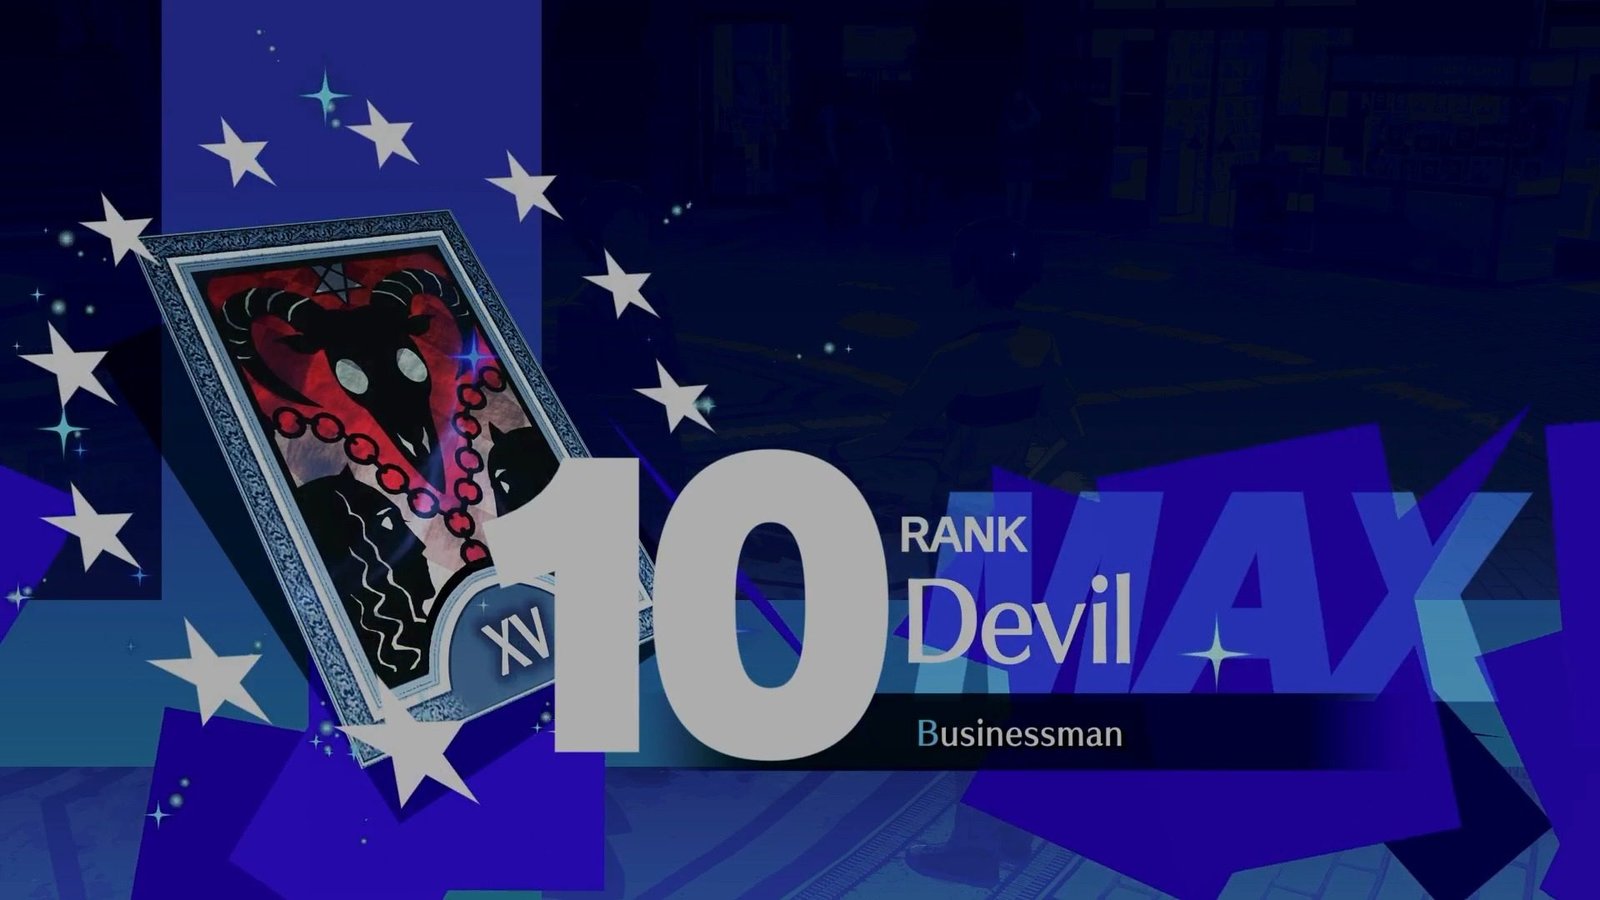 Persona 3 Reload - Devil Social Link Guide